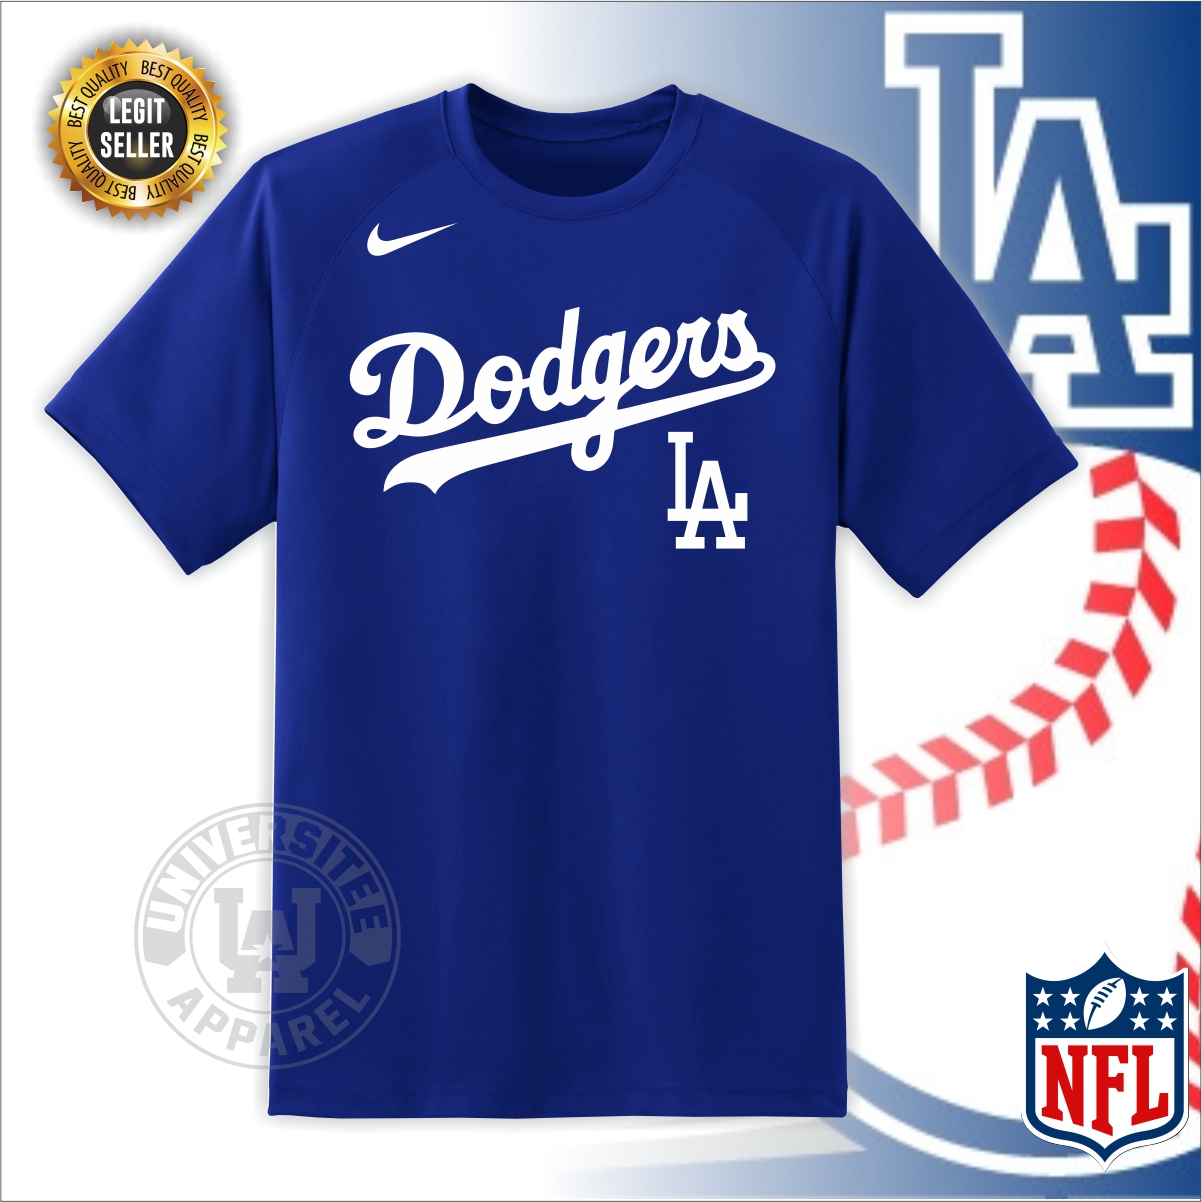 Lumpia L.A. Dodgers T-Shirt